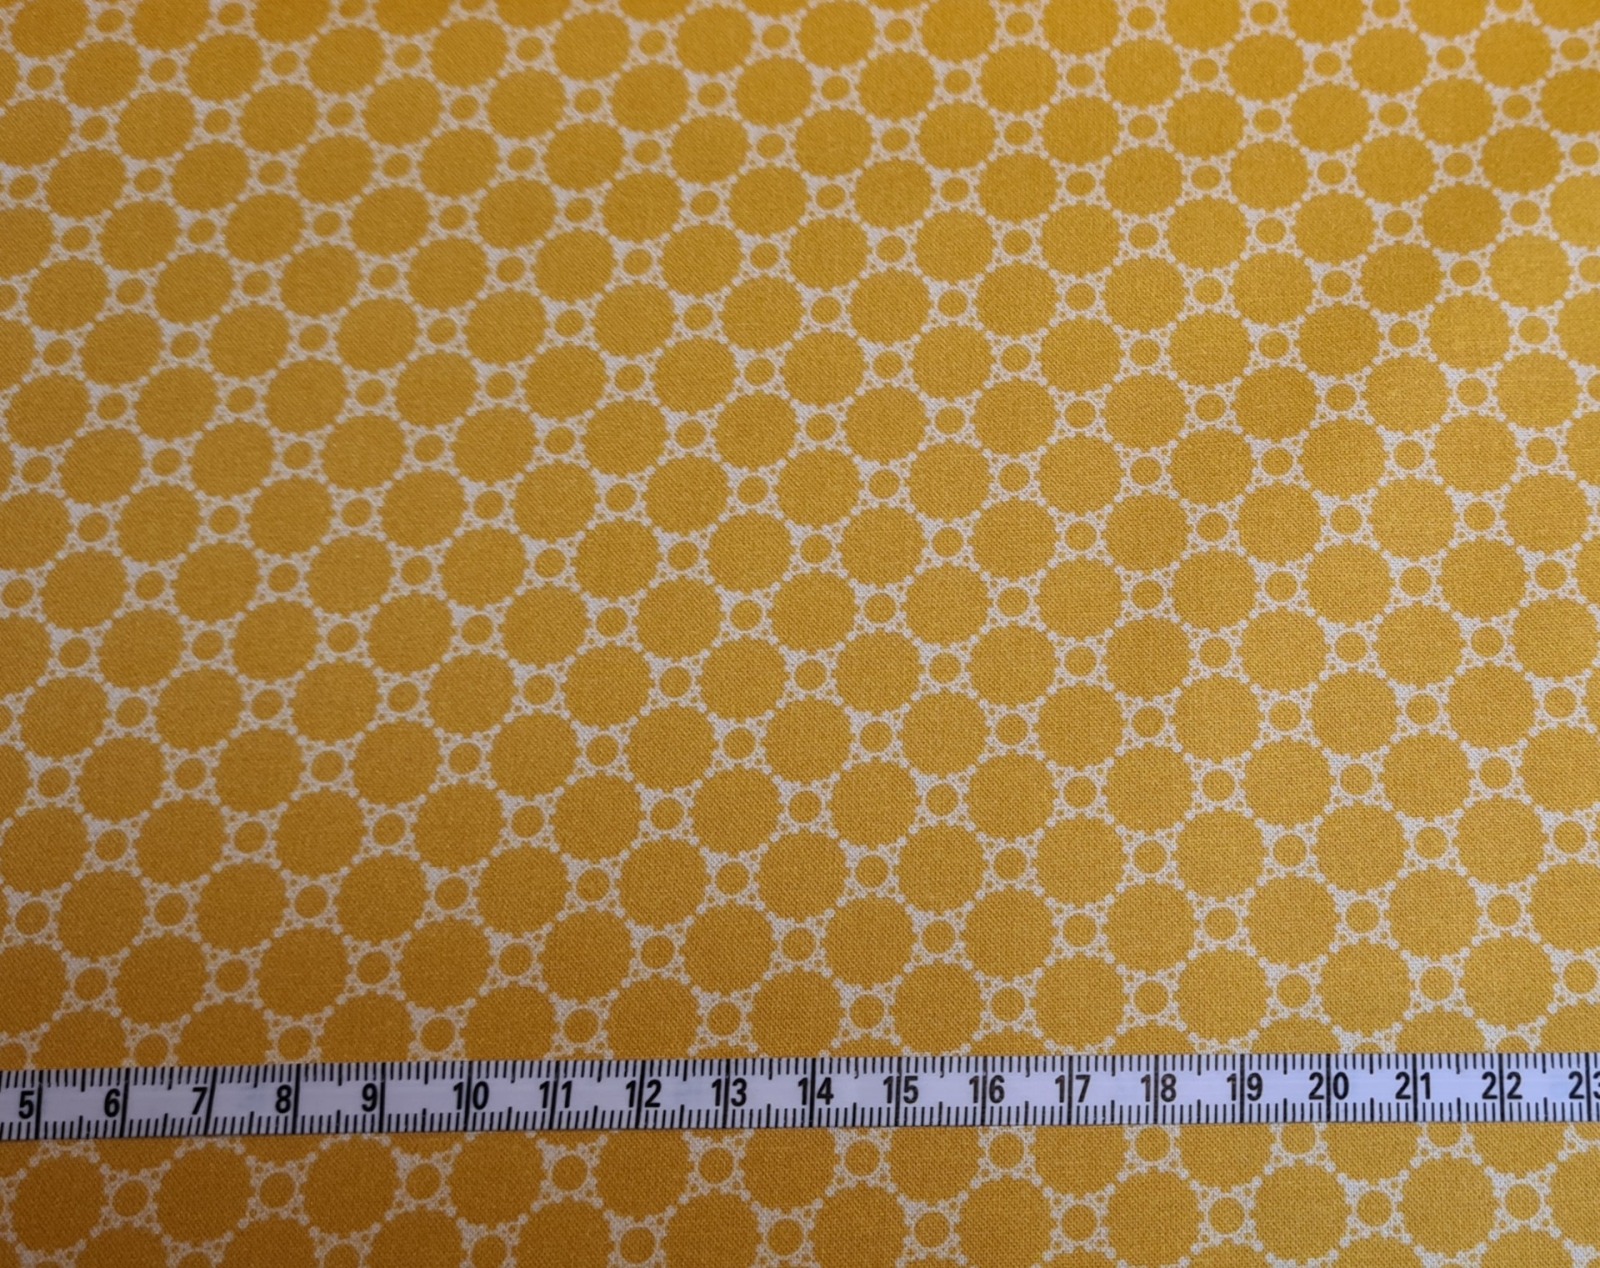 Studio Fabrics Lace Baumwollstoff Punkte Dots